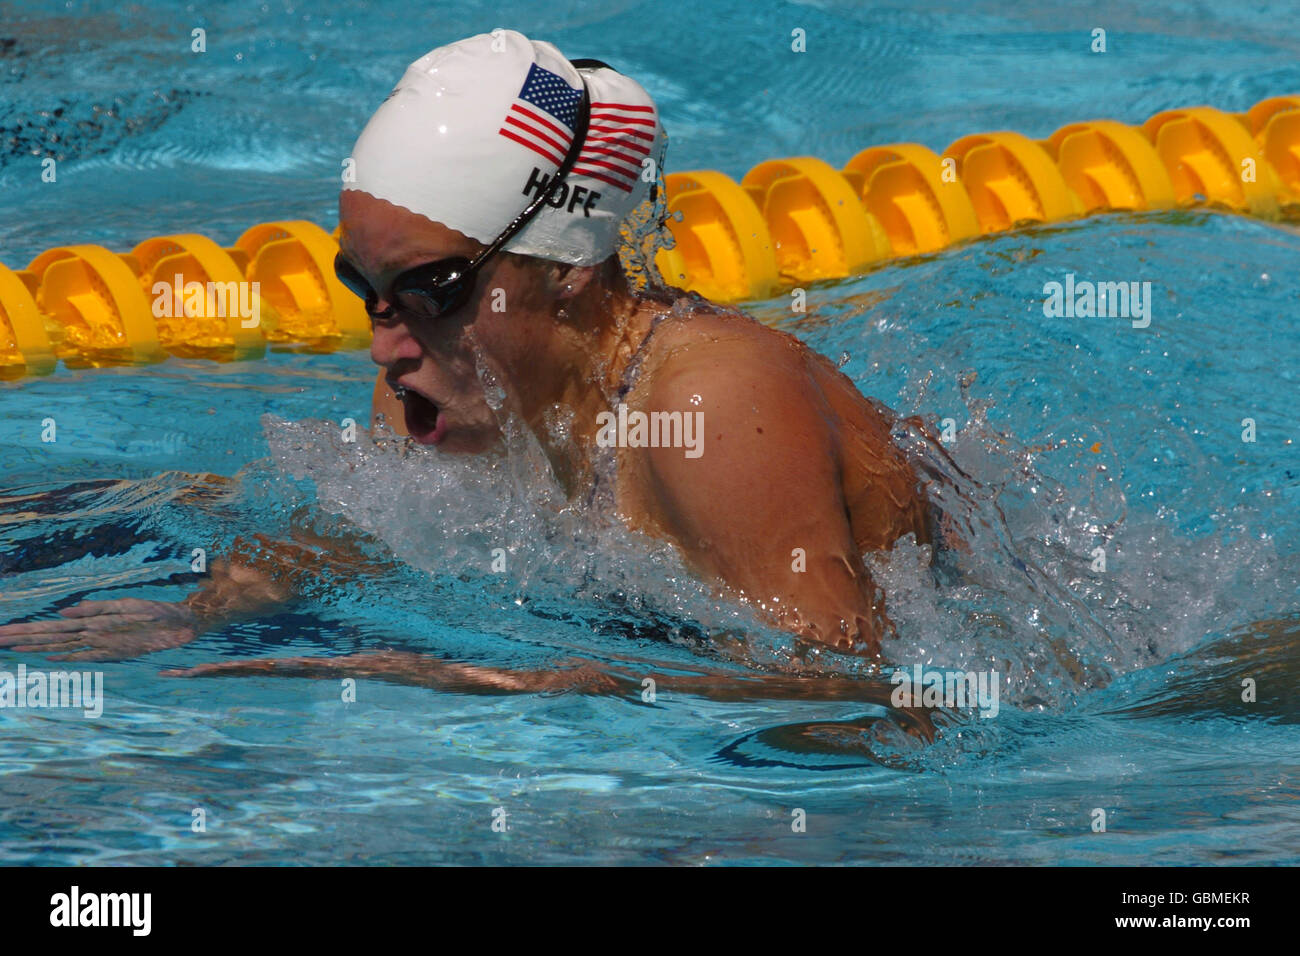 Nuoto - Giochi Olimpici di Atene 2004 - Donne 400m individuale Medley - calore due. USA Katie Hoff in azione Foto Stock